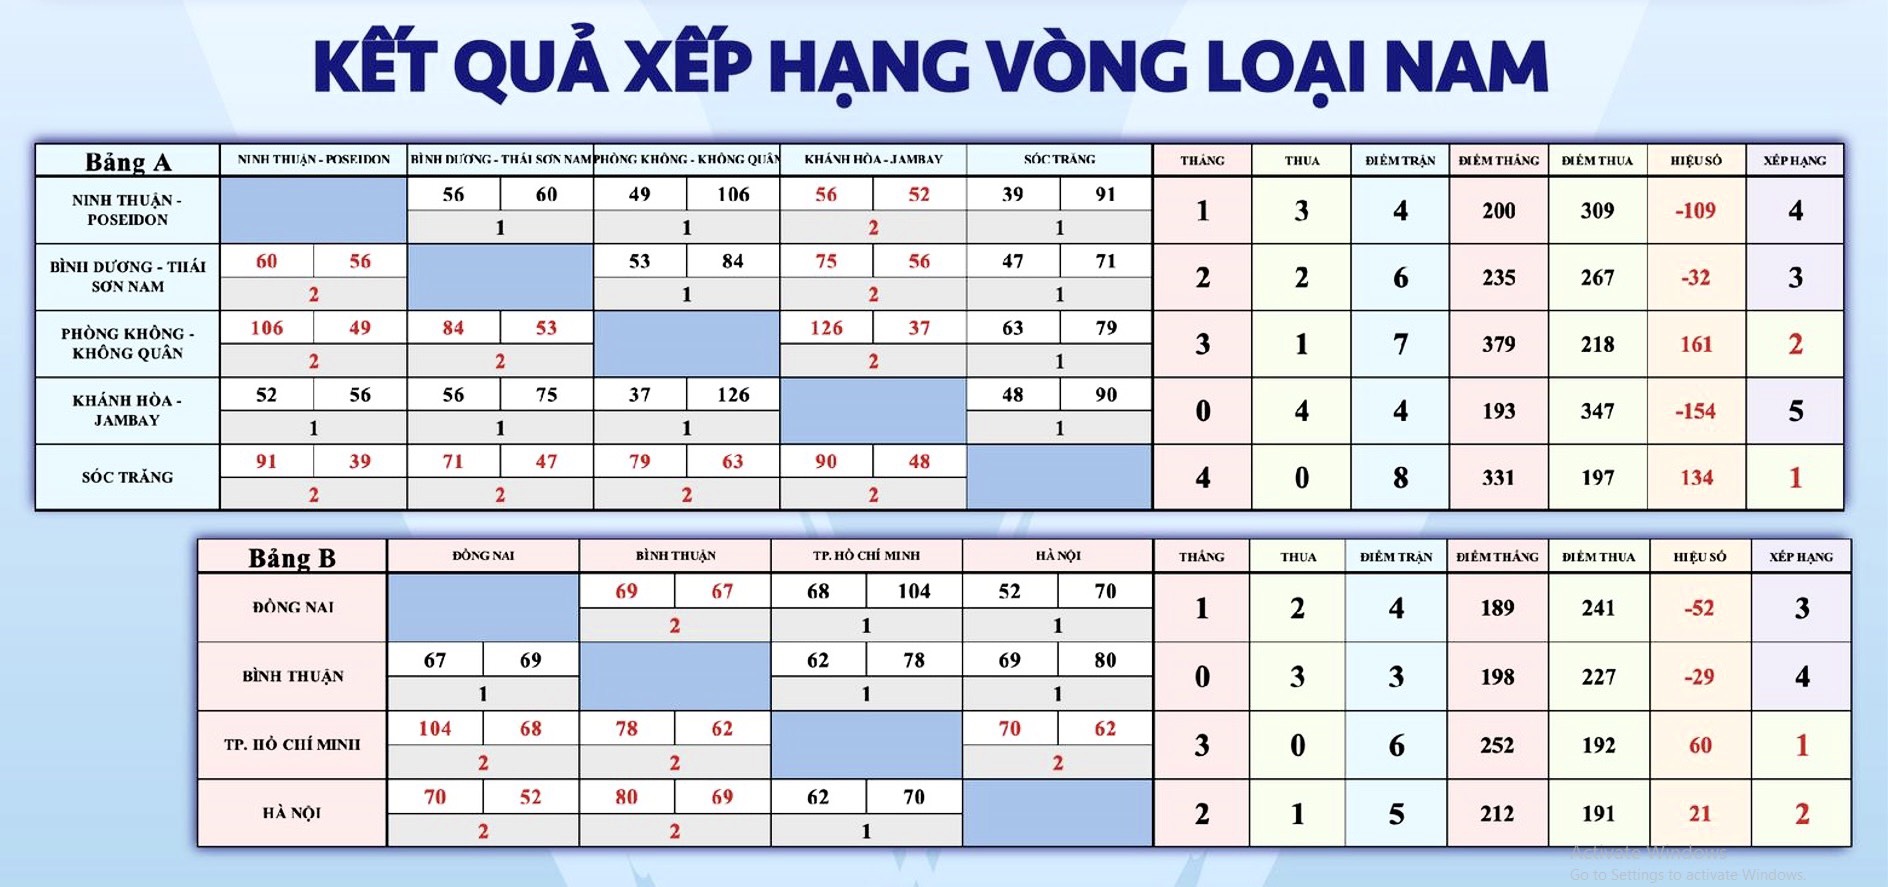 Kết quả vòng bảng nội dung nam 5x5 (nguồn: Liên đoàn Bóng rổ Việt Nam)